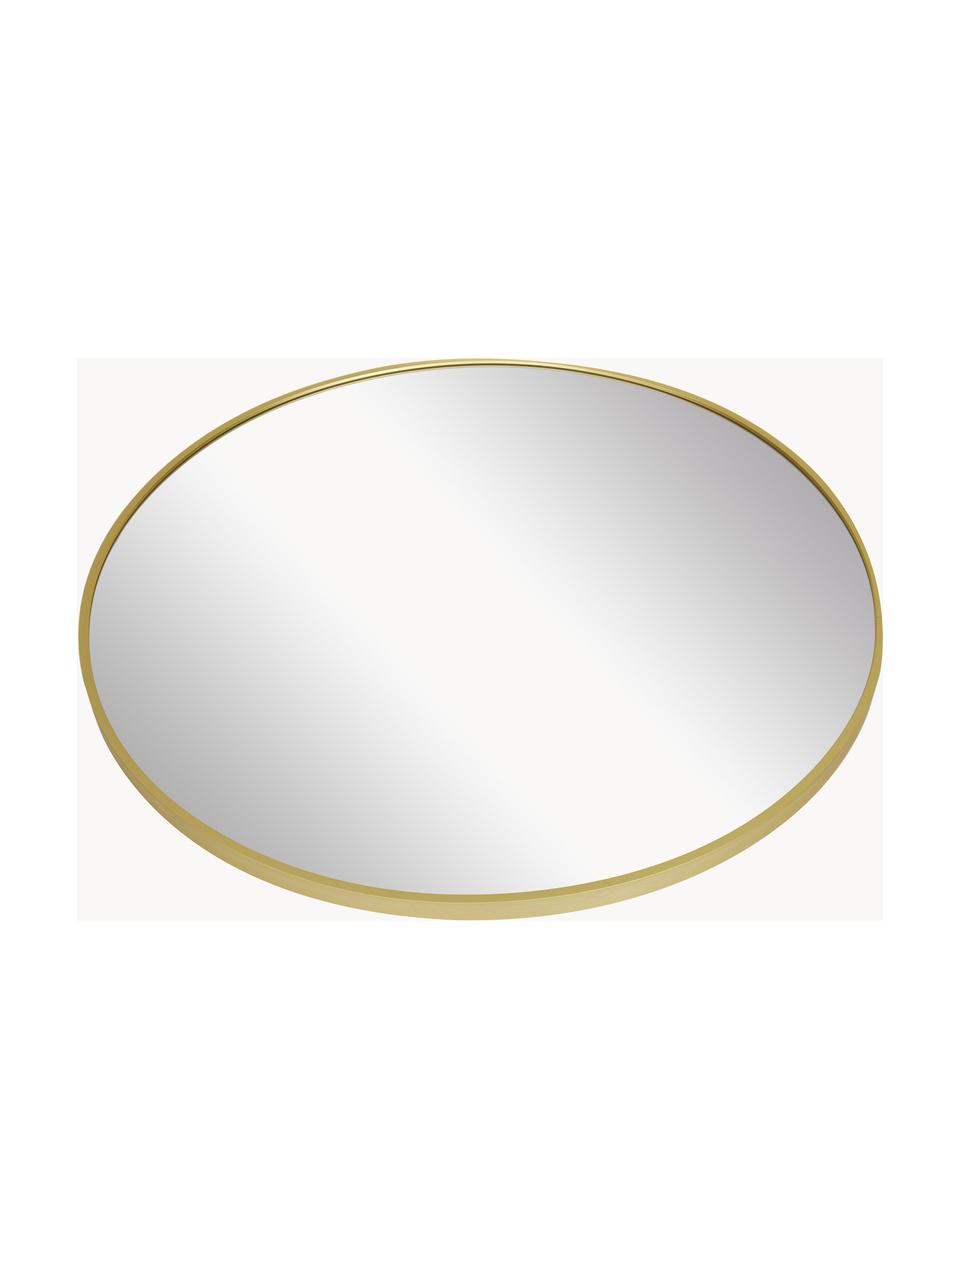 Runder Wandspiegel Ida, Rahmen: Aluminium, beschichtet, Rückseite: Mitteldichte Holzfaserpla, Spiegelfläche: Spiegelglas, Goldfarben, Ø 72 cm